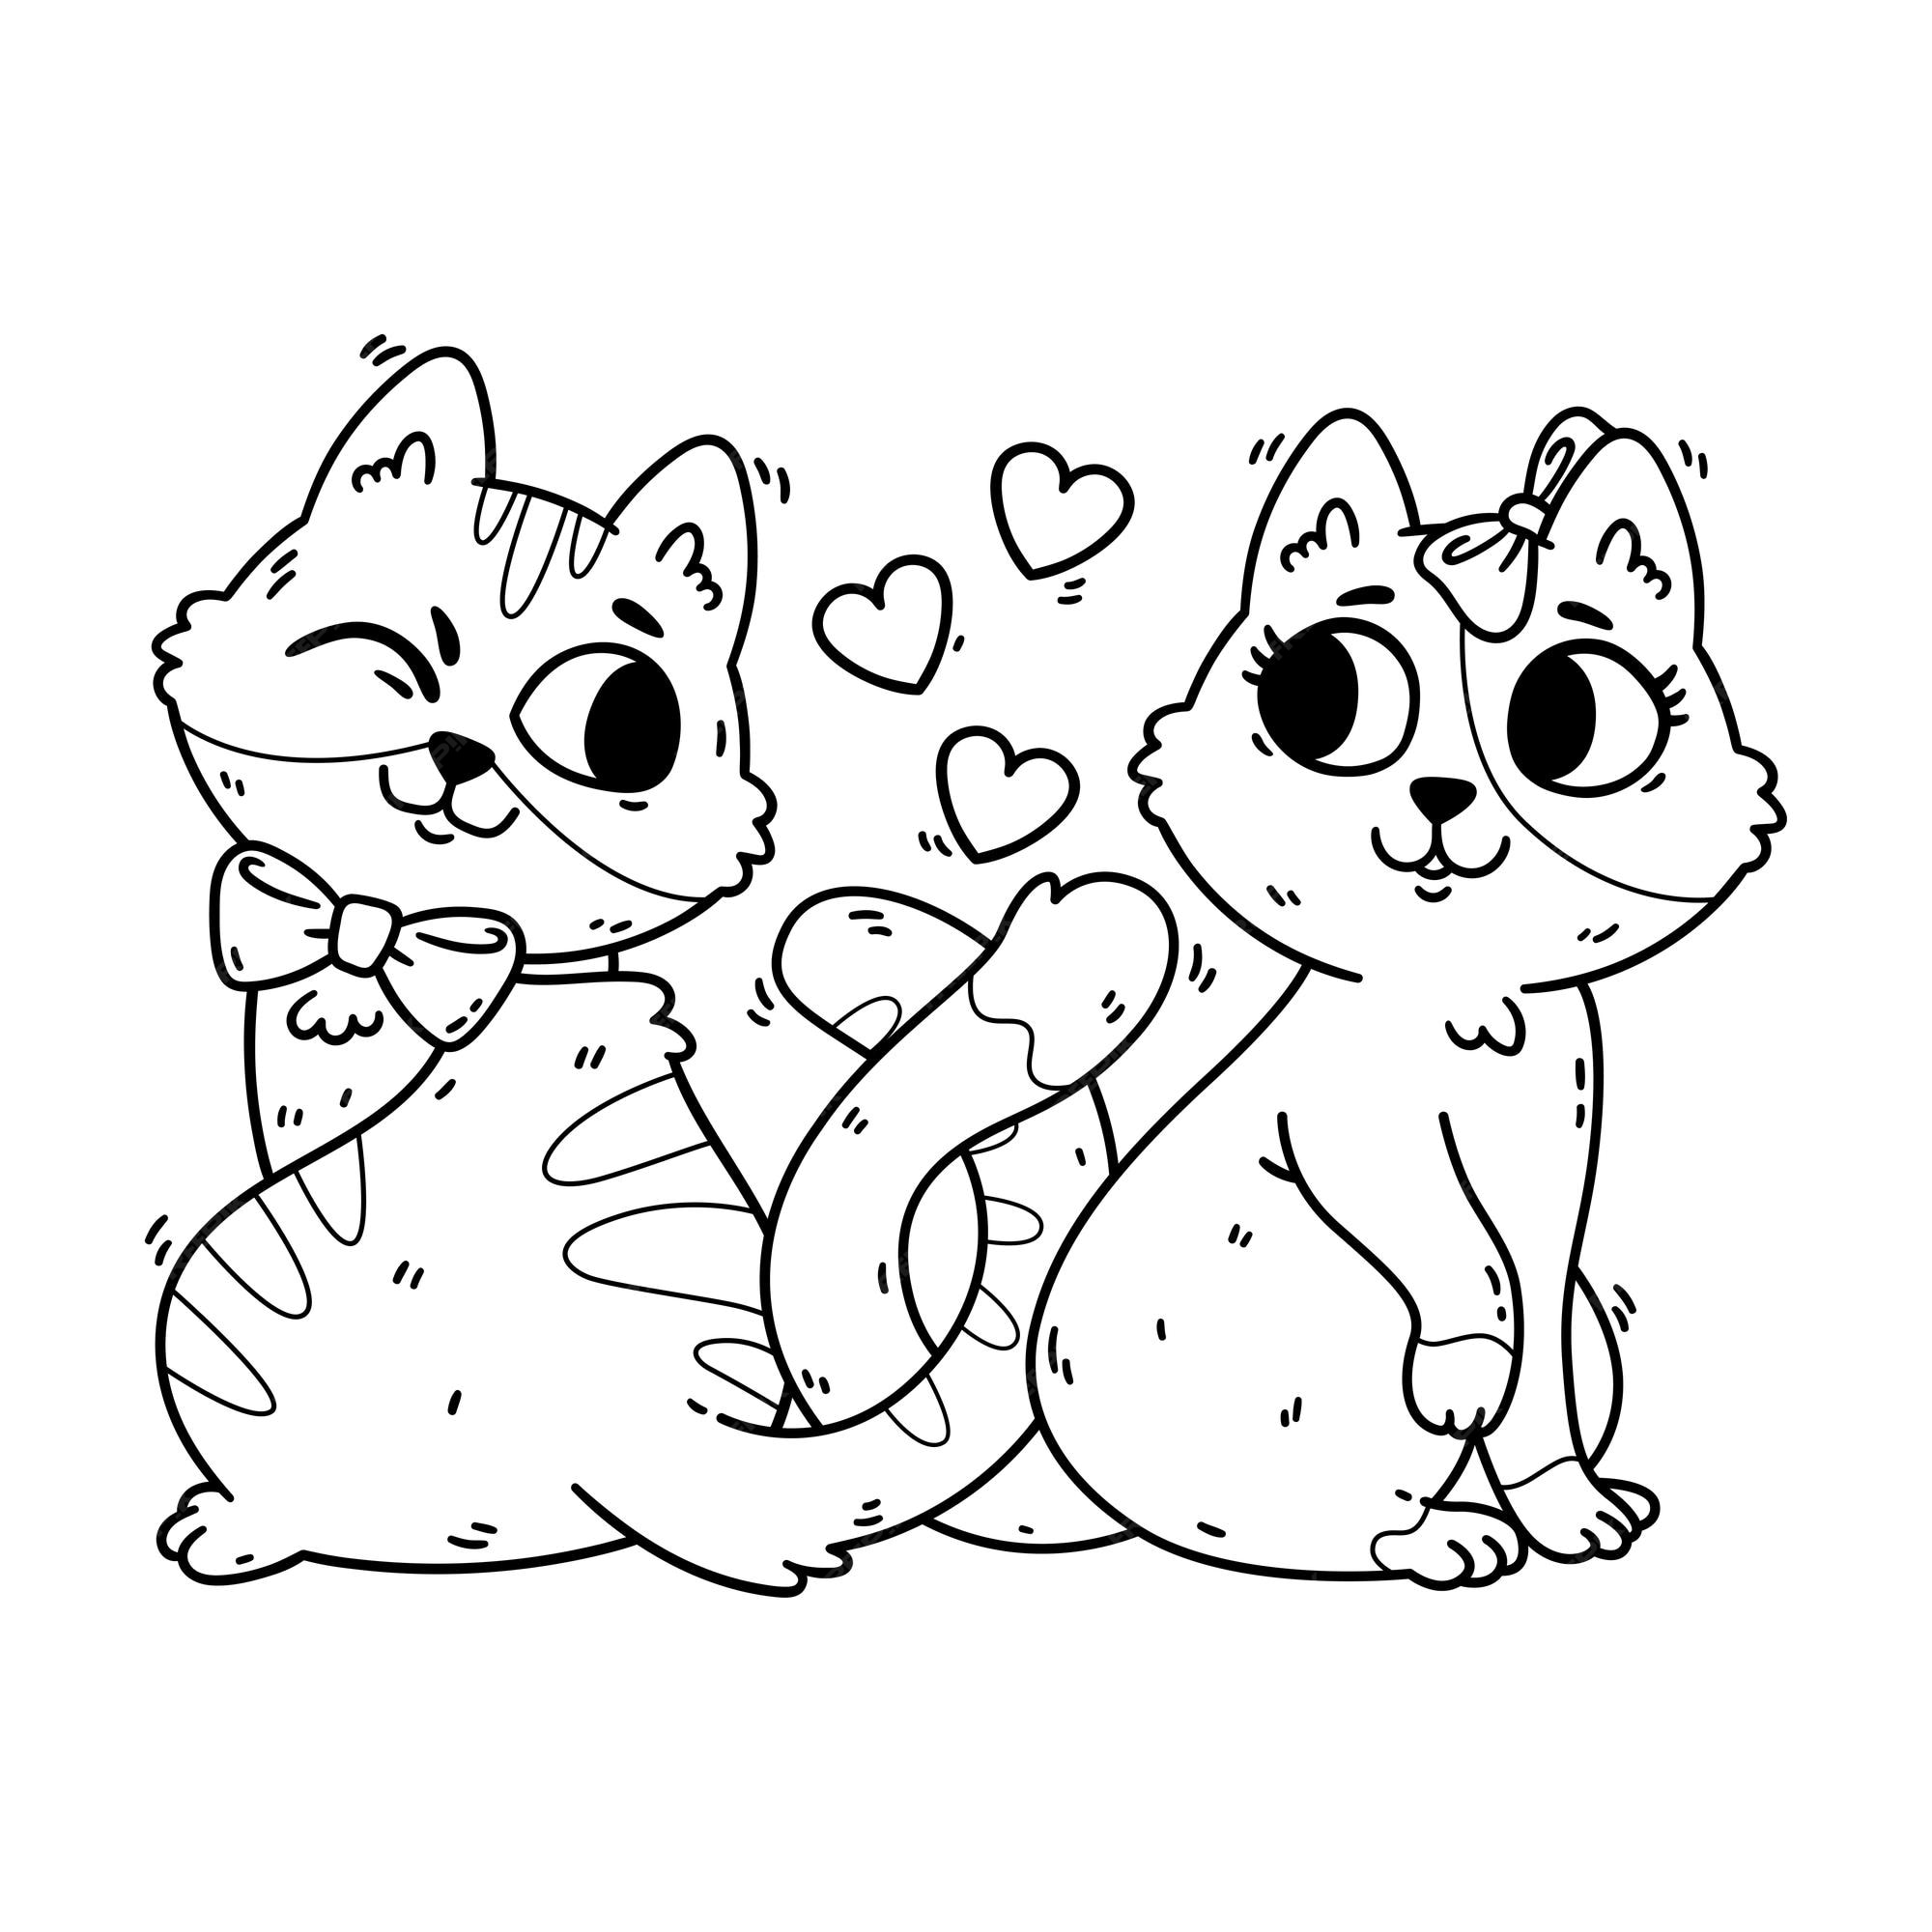 Los gatos se enamoran y se anudan la cola. postal del 14 de febrero con  animales domésticos. romántica tarjeta de felicitación del día de san  valentín de gatitos. página para colorear. ilustración